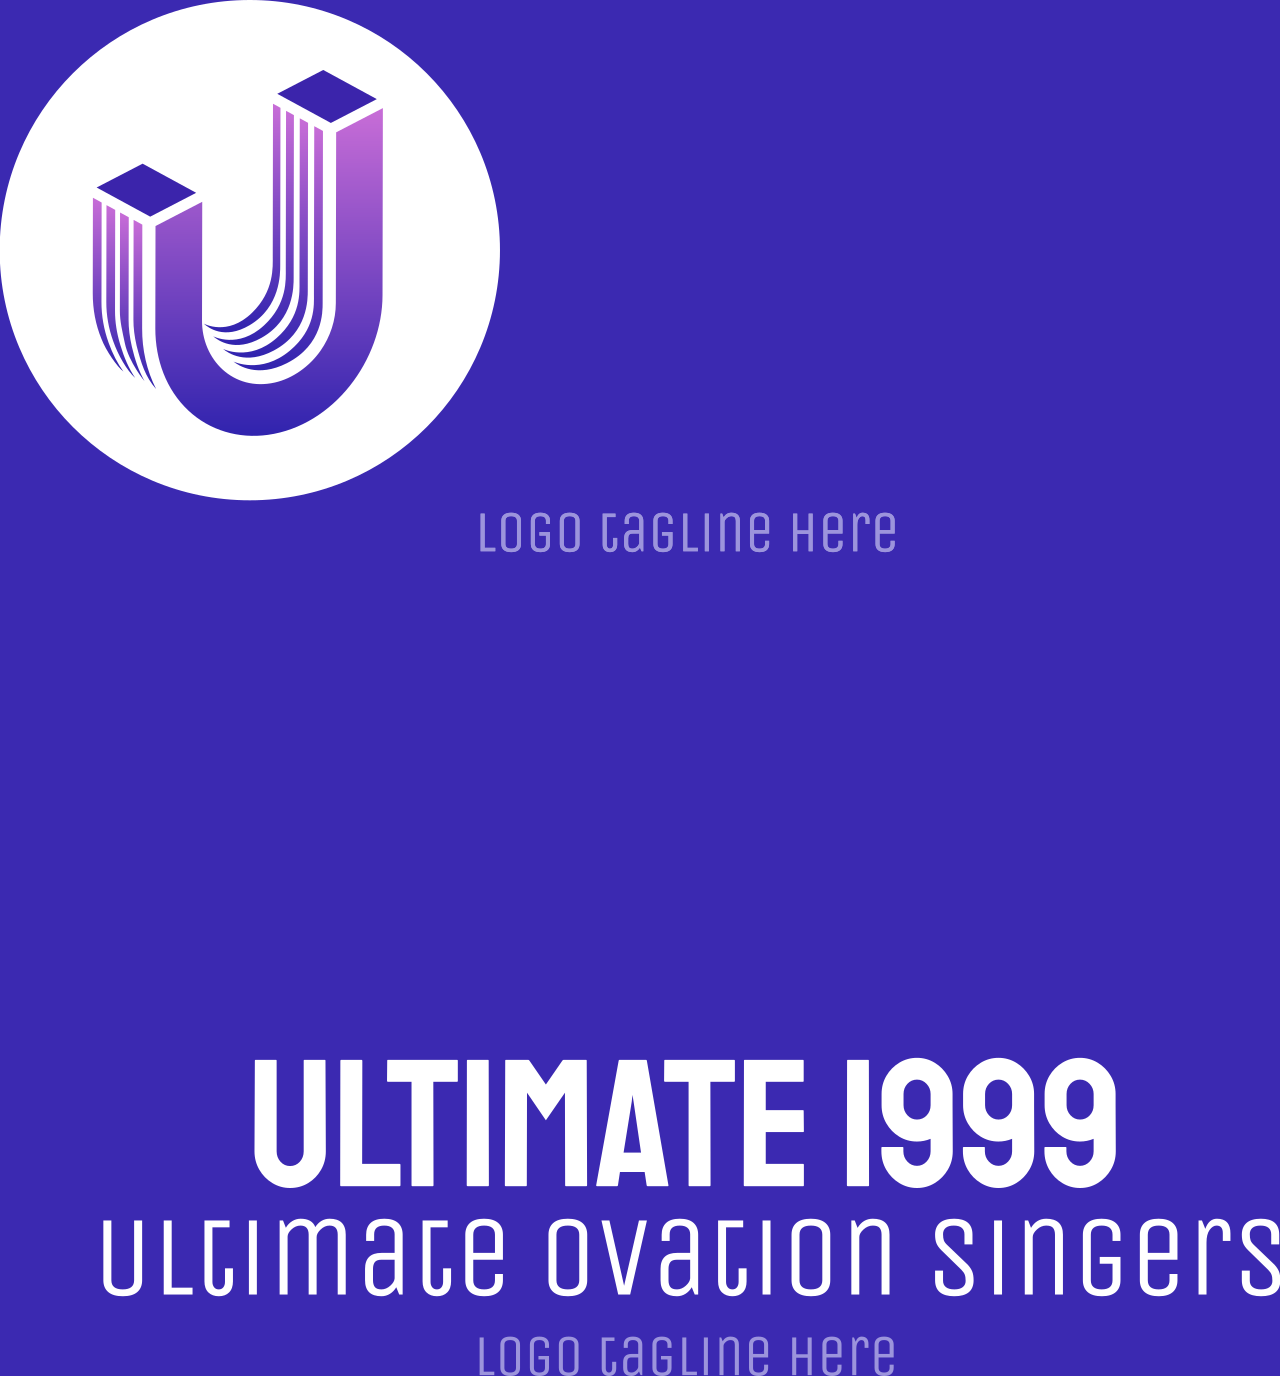 Ultimate 1999's logo